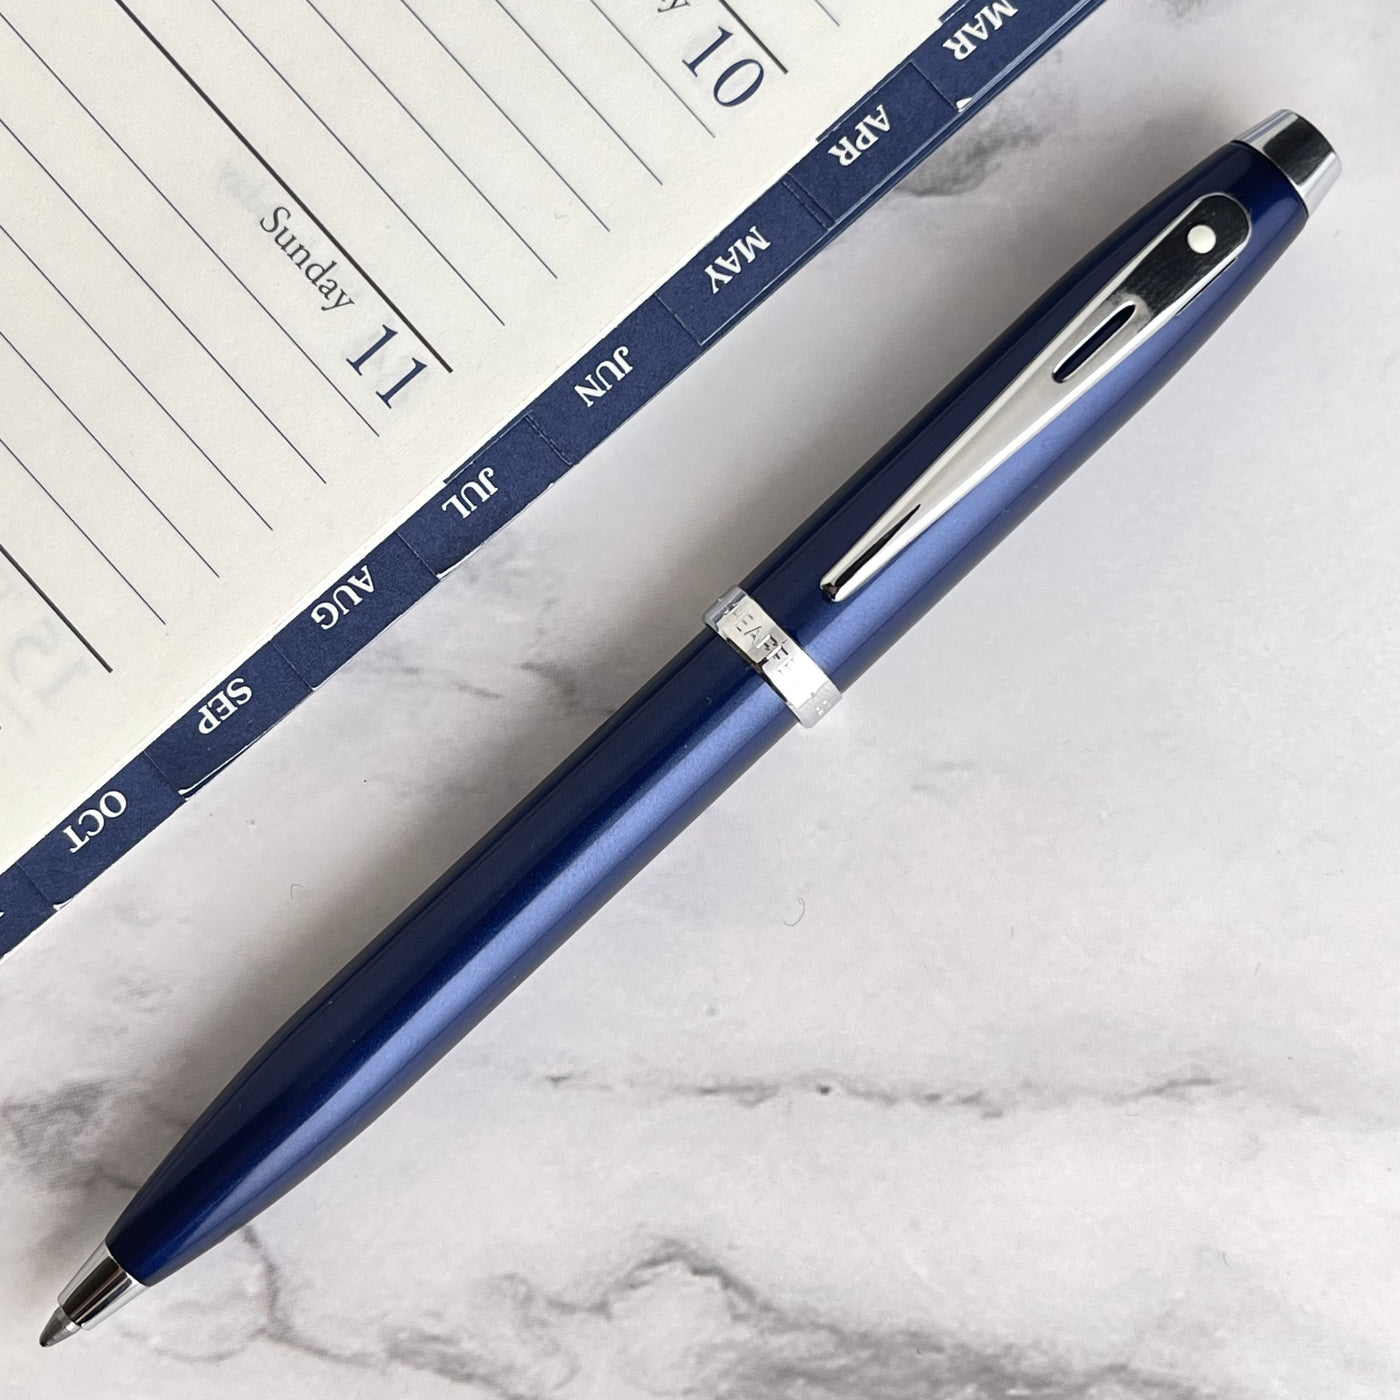 Sheaffer 100 Ballpoint Pen - Glossy Blue